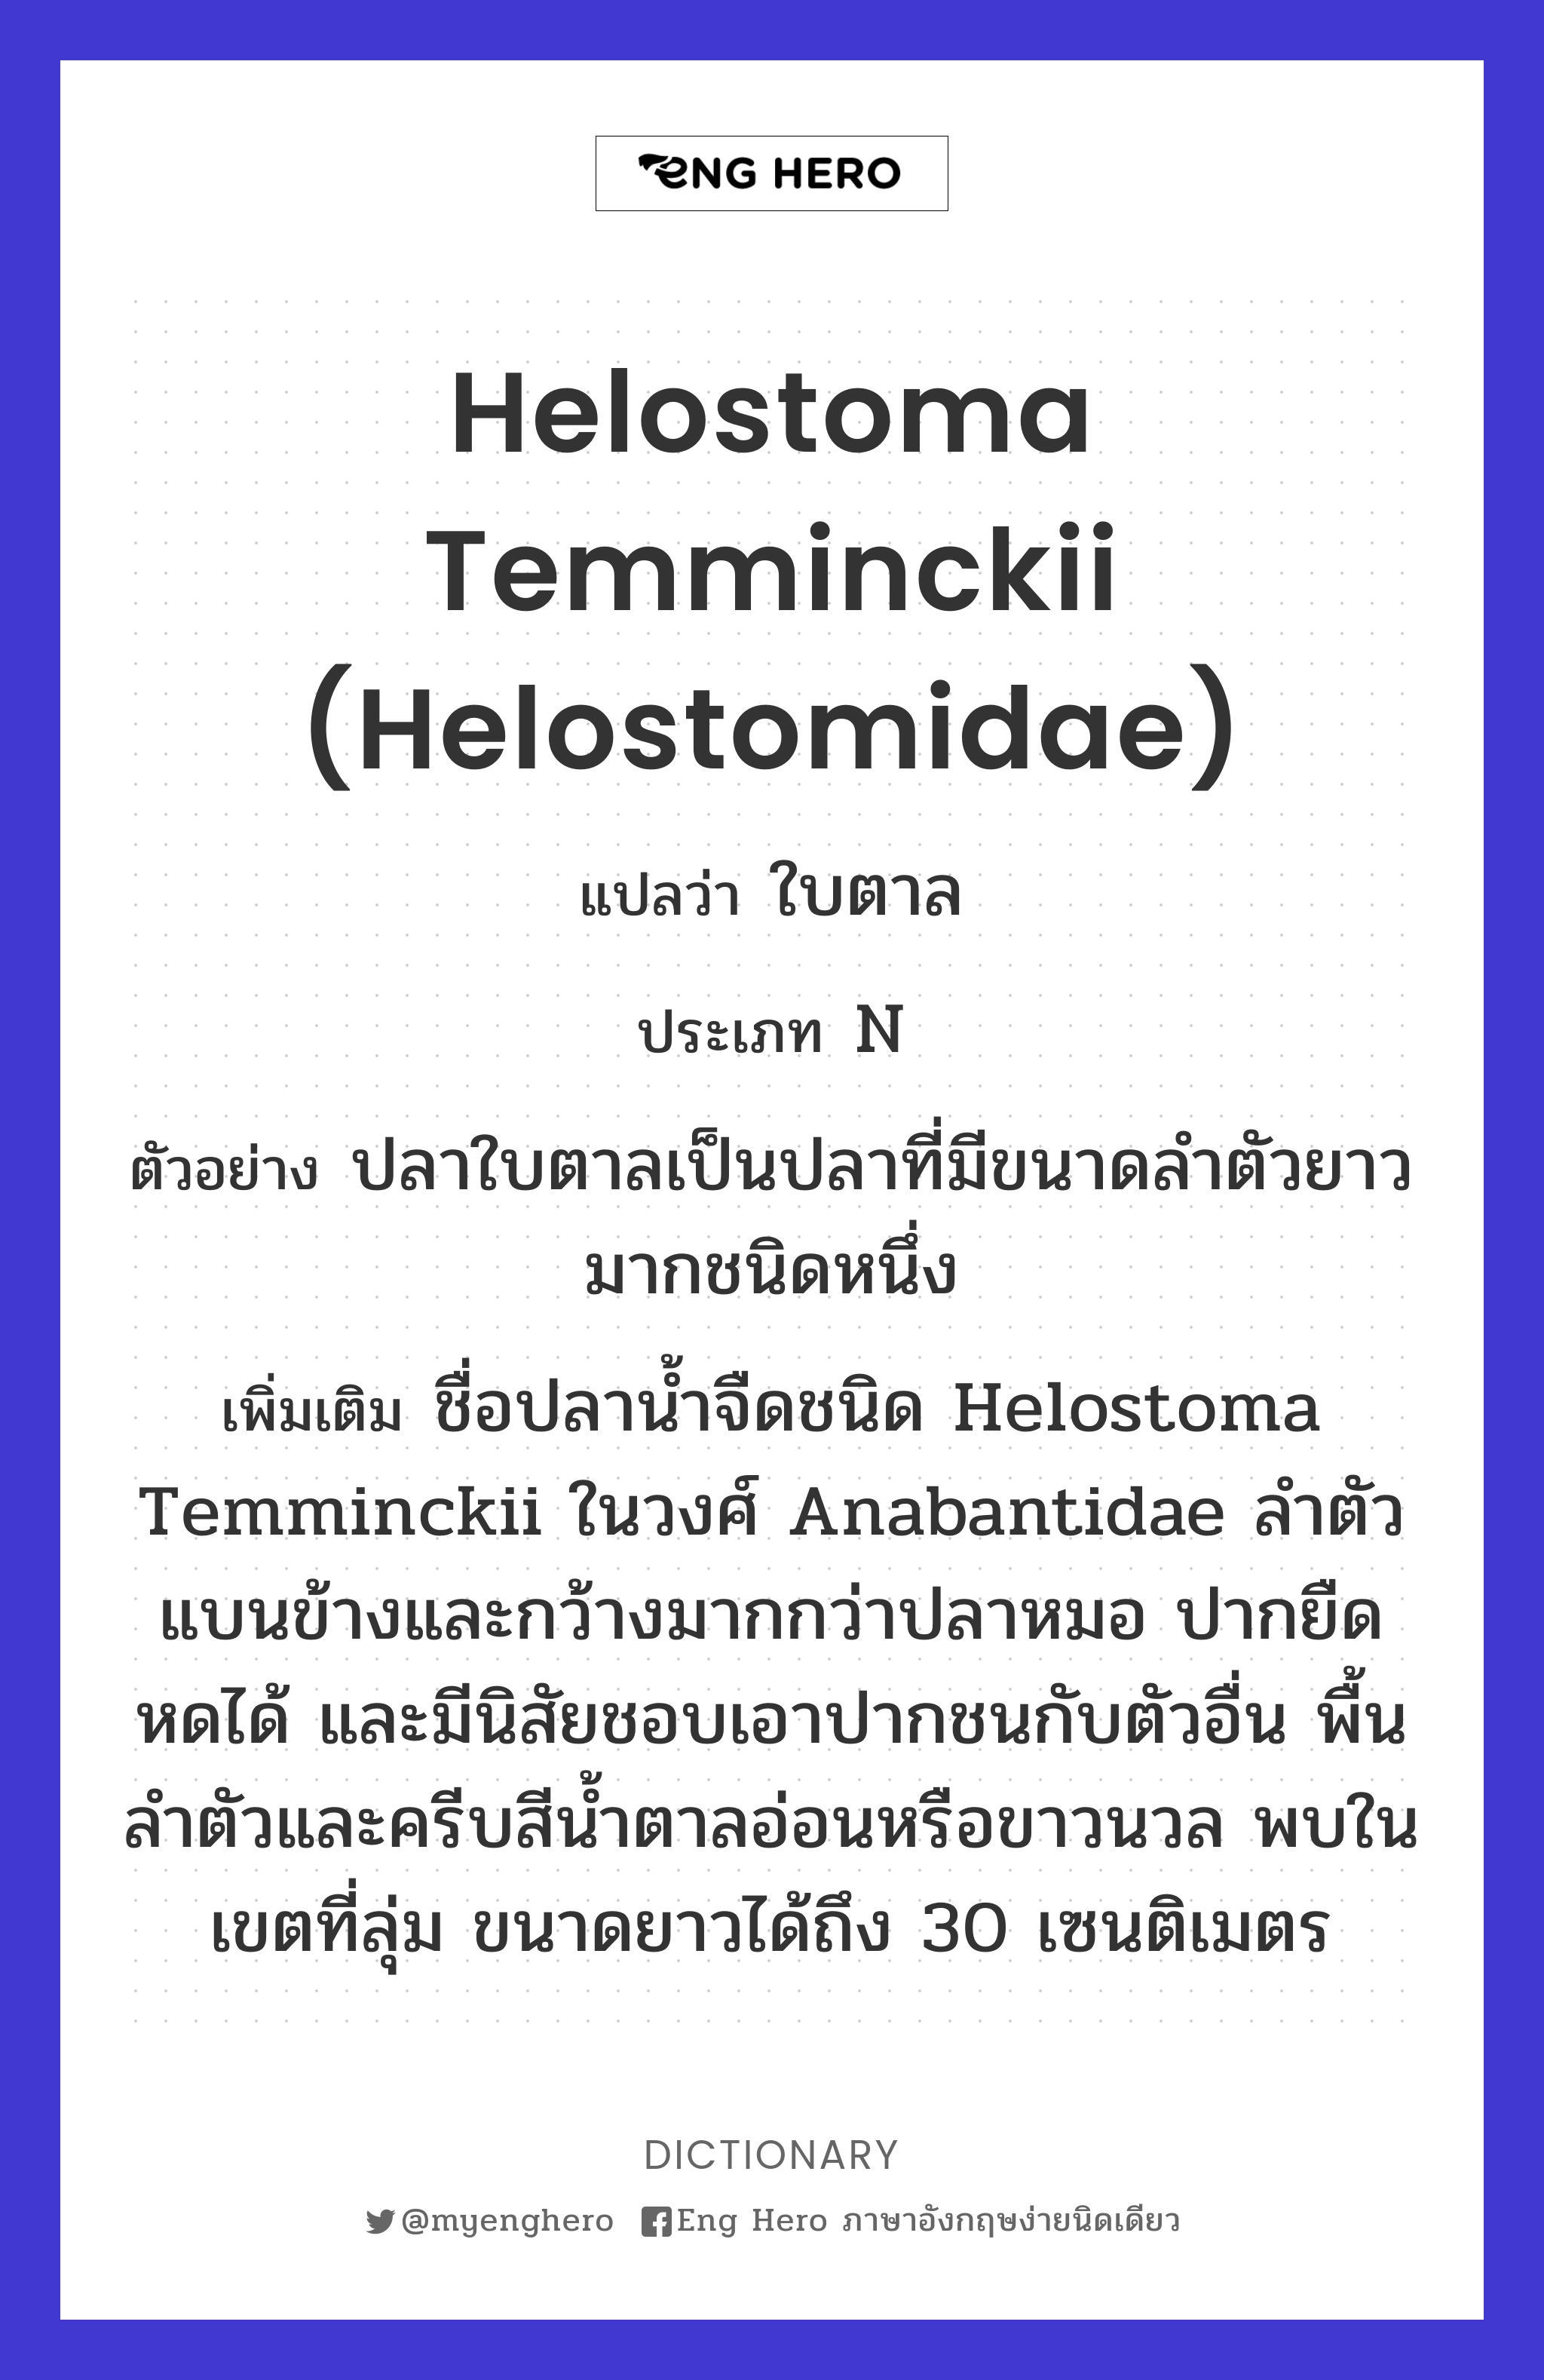 Helostoma temminckii (Helostomidae)